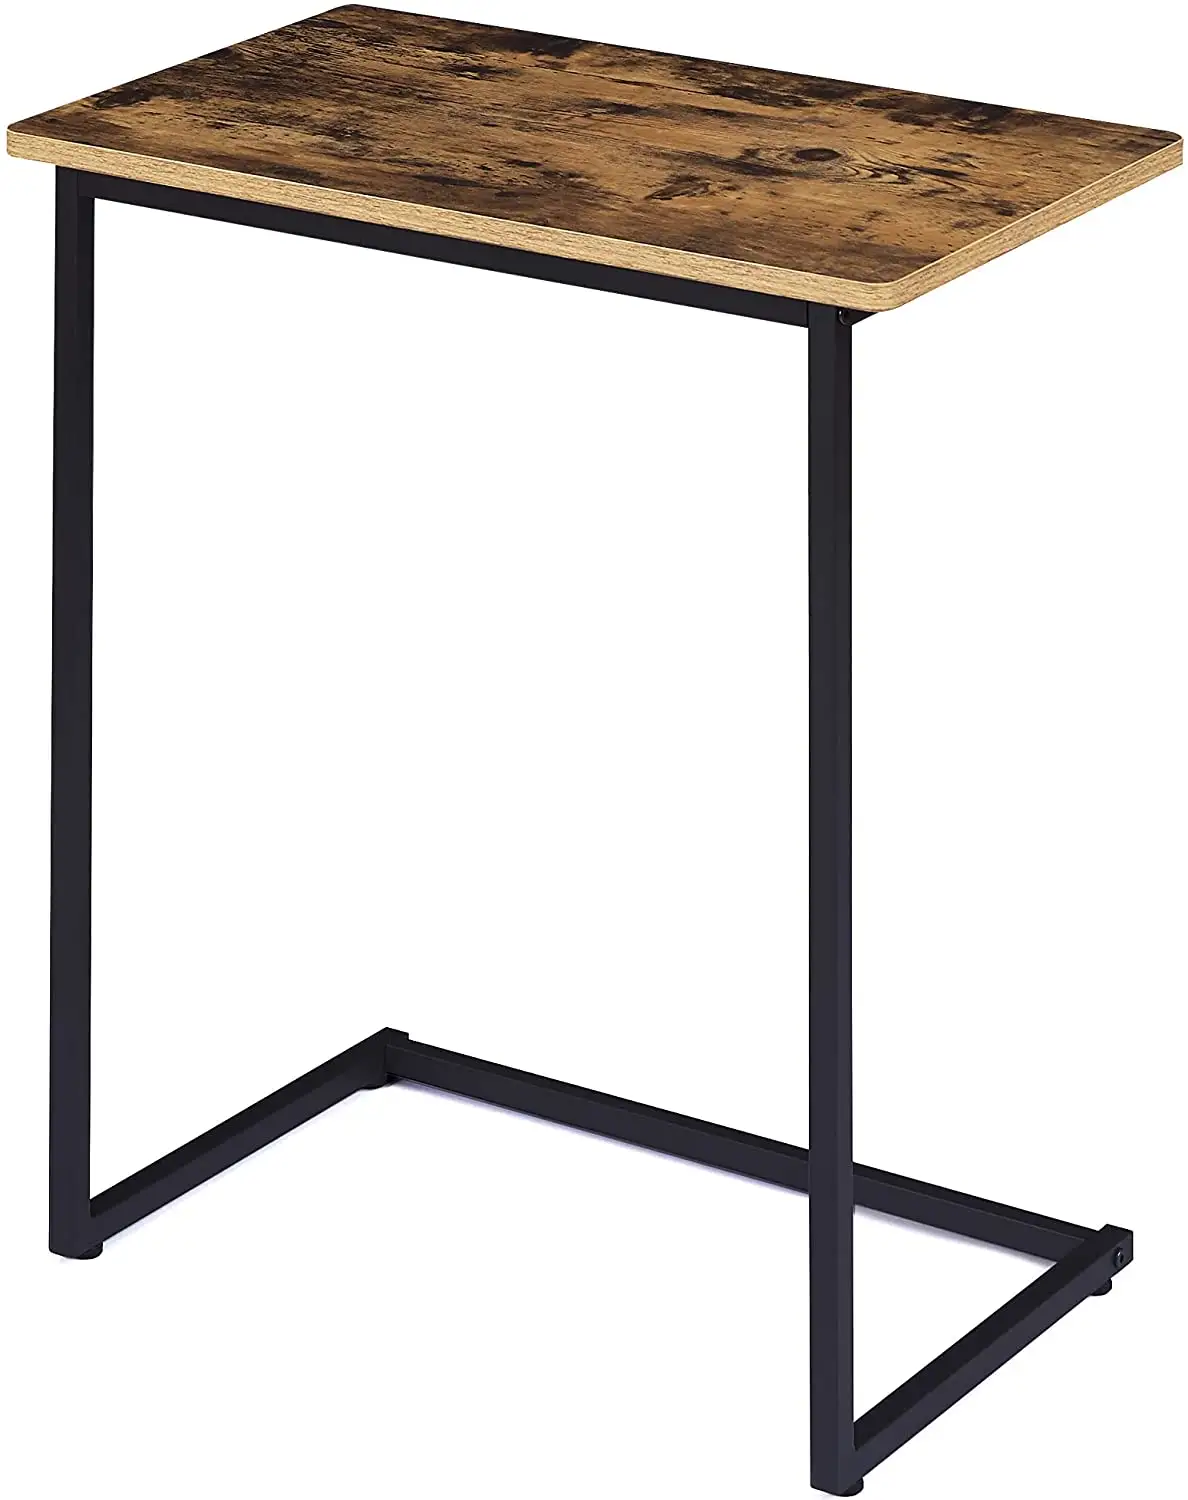 Moderno industriale tavolo Snack in legno comodino laterale per soggiorno camera da letto rustica tavolini da tè